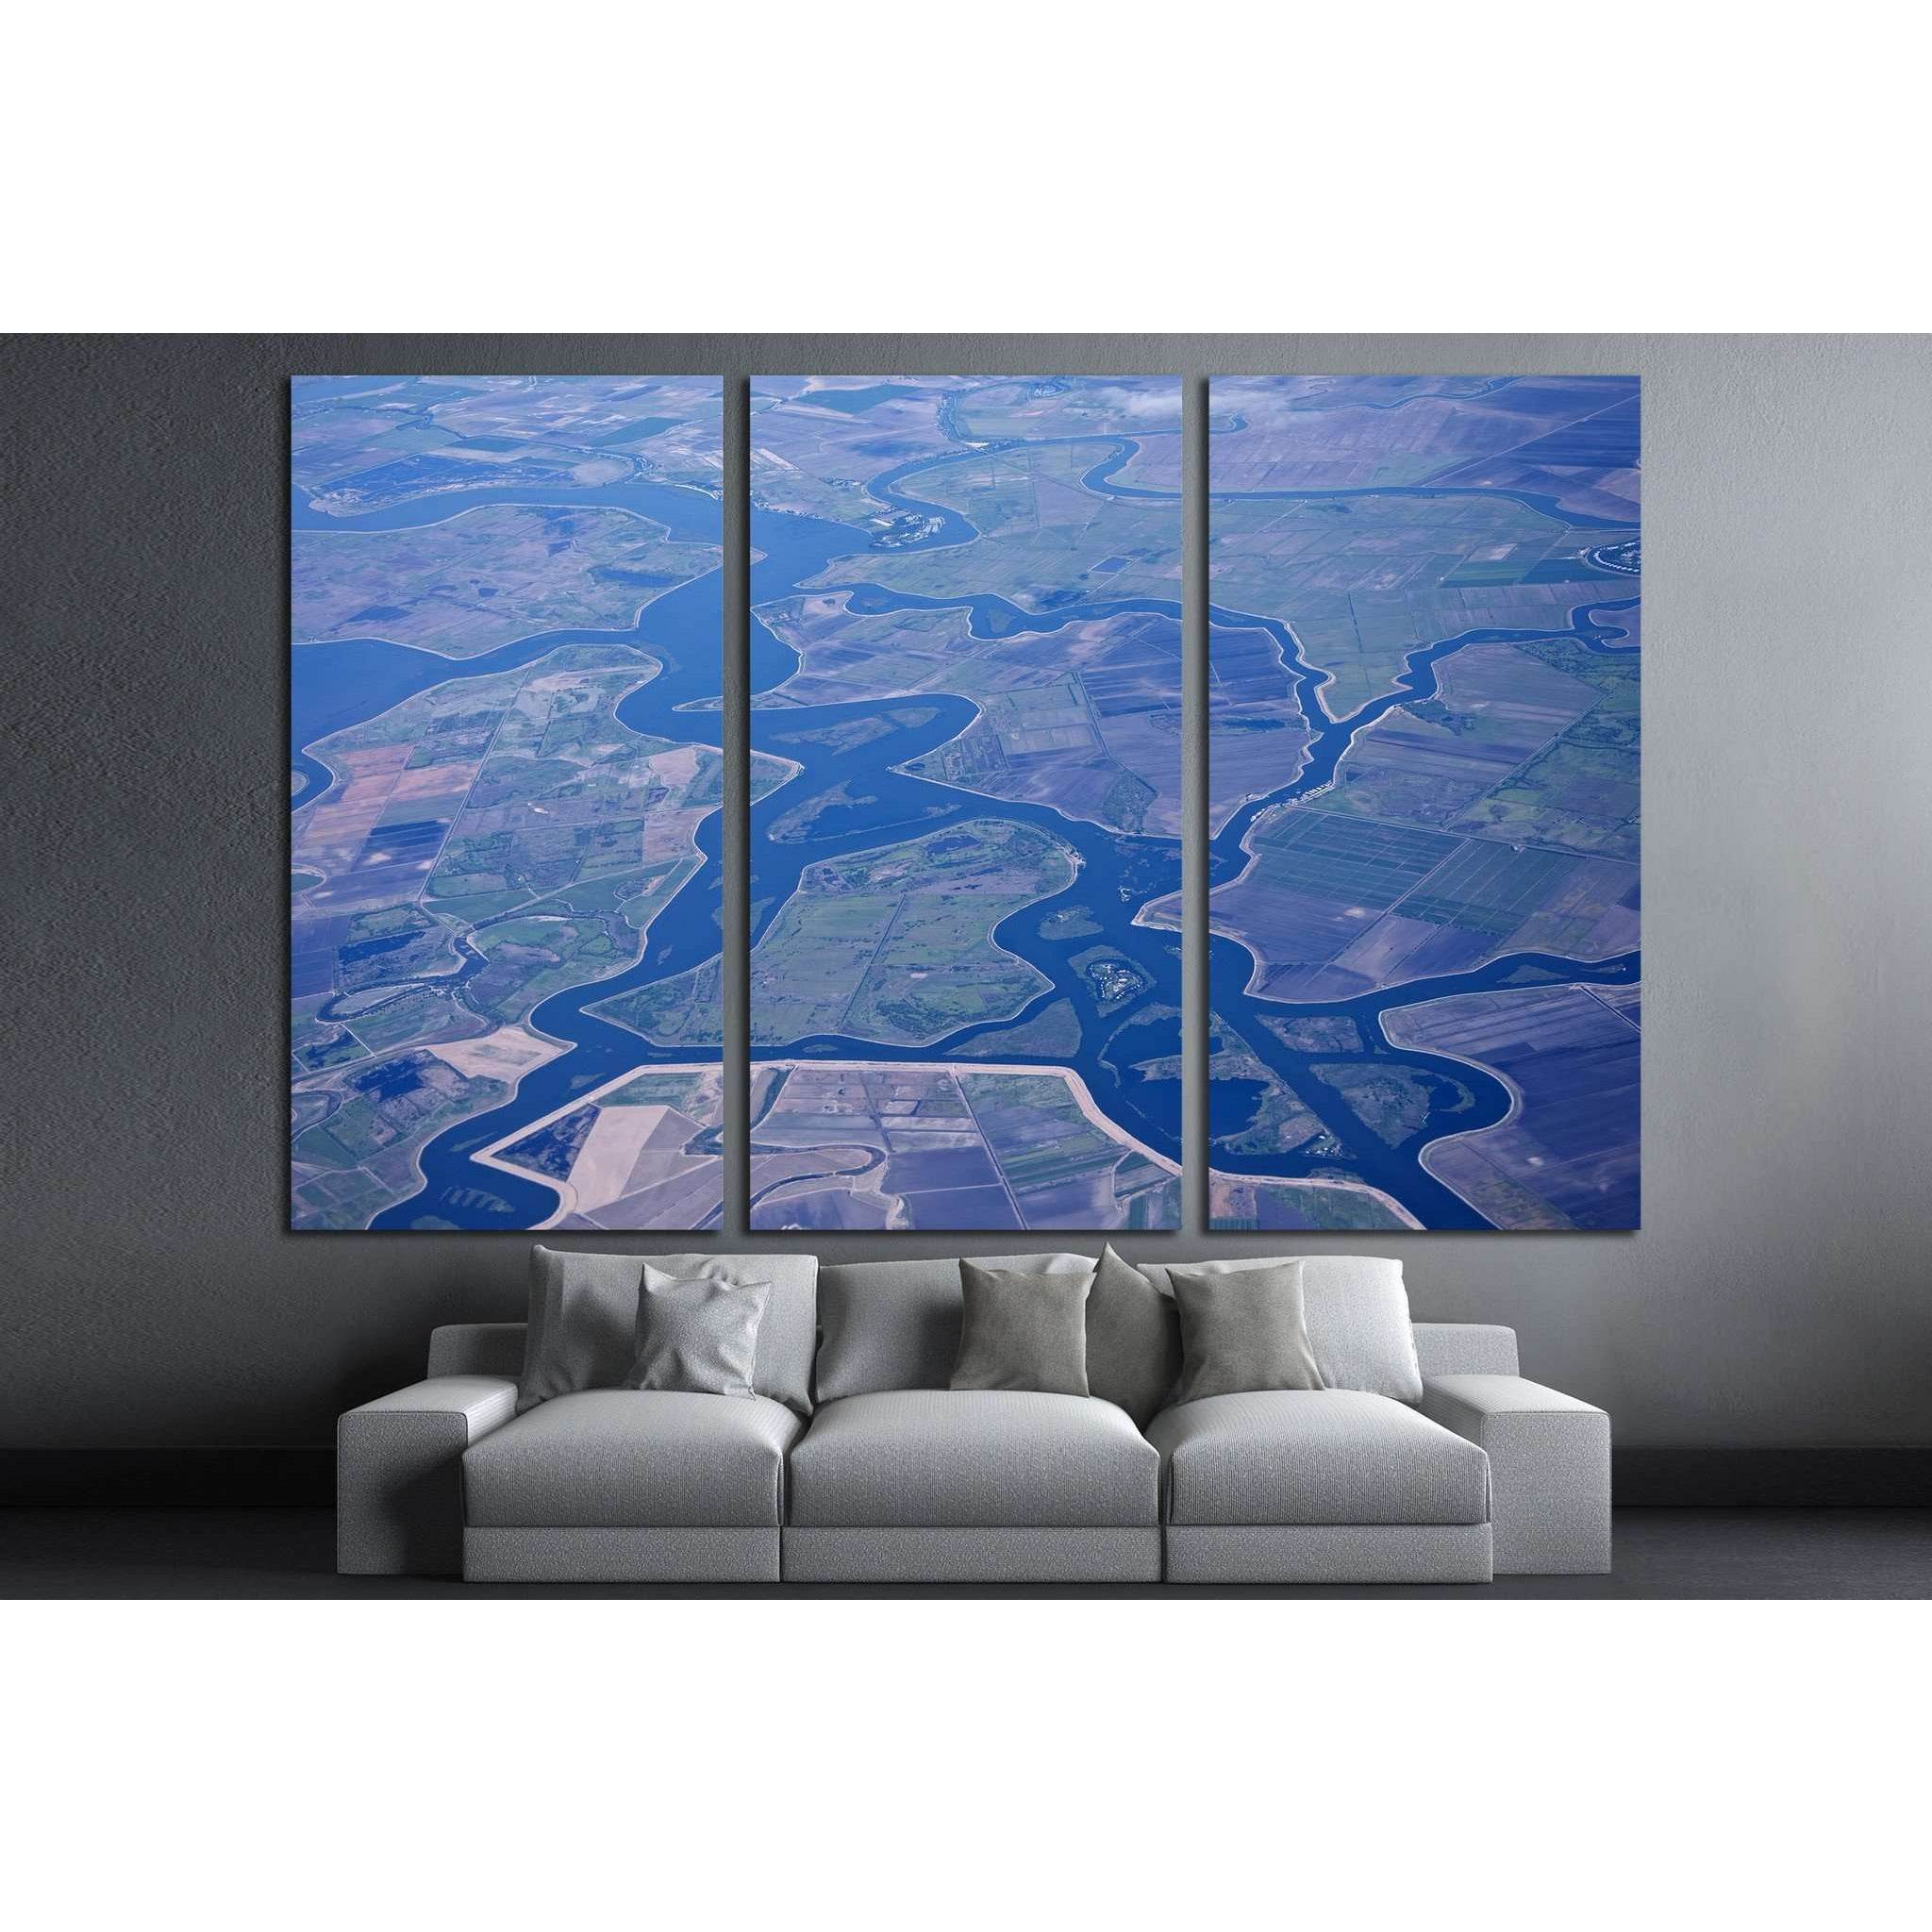 Aerial view of the Sacramento, San Joaquin River Delta, California, USA №1820 Ready to Hang Canvas Print